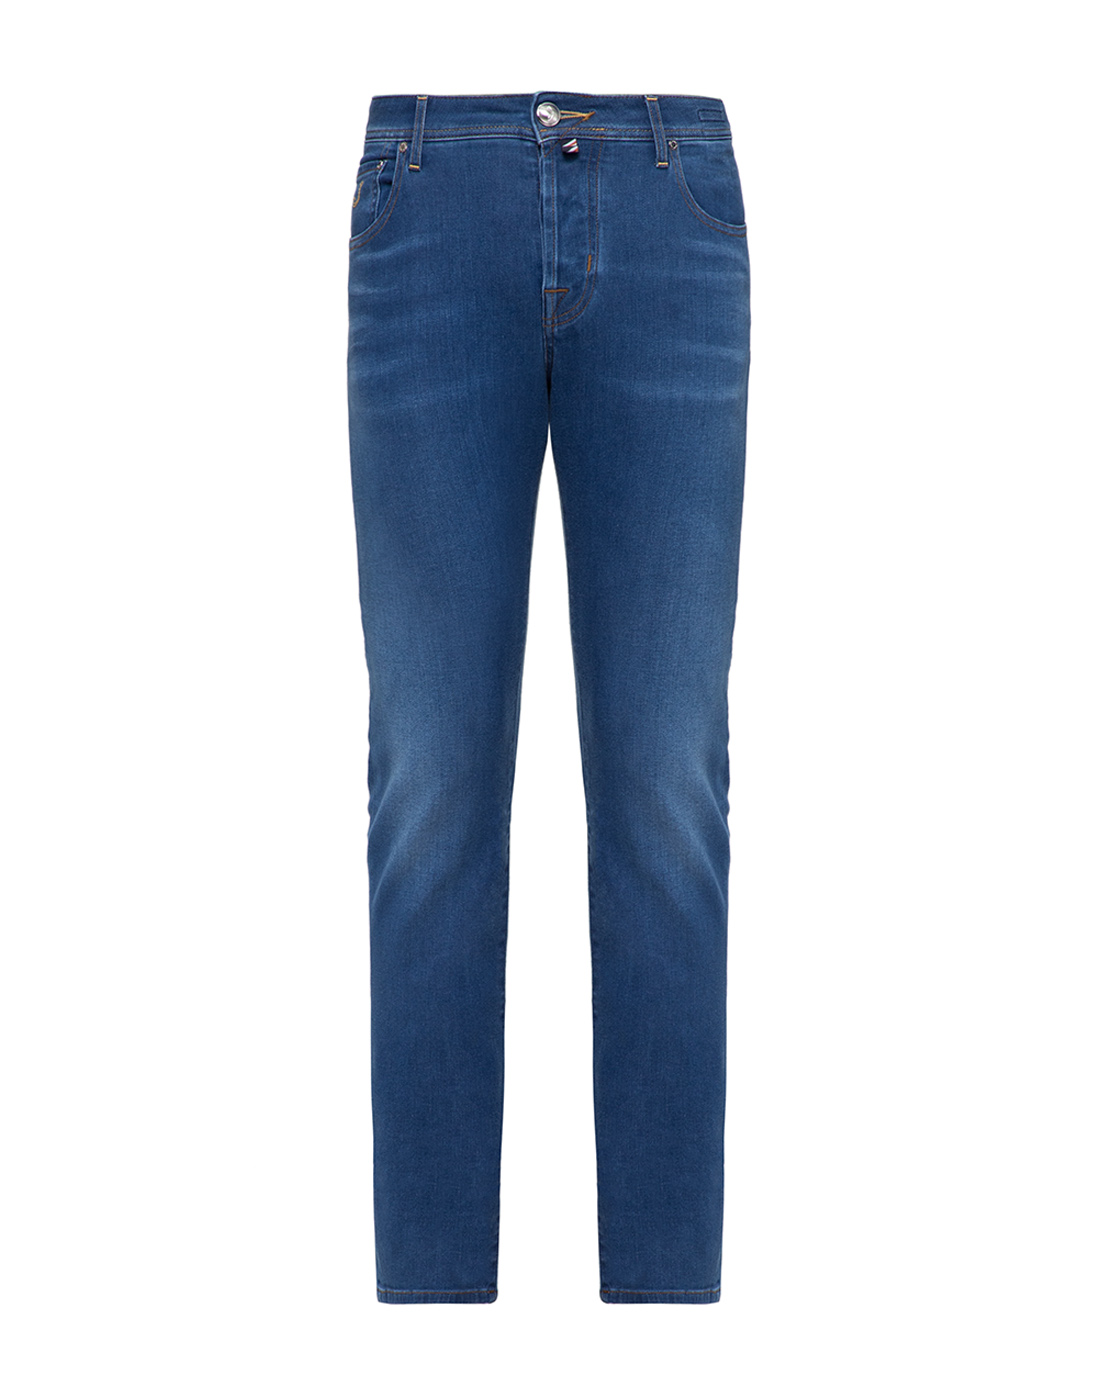 Мужские синие джинсы Jacob Cohen SJ620 COMF-01849-1